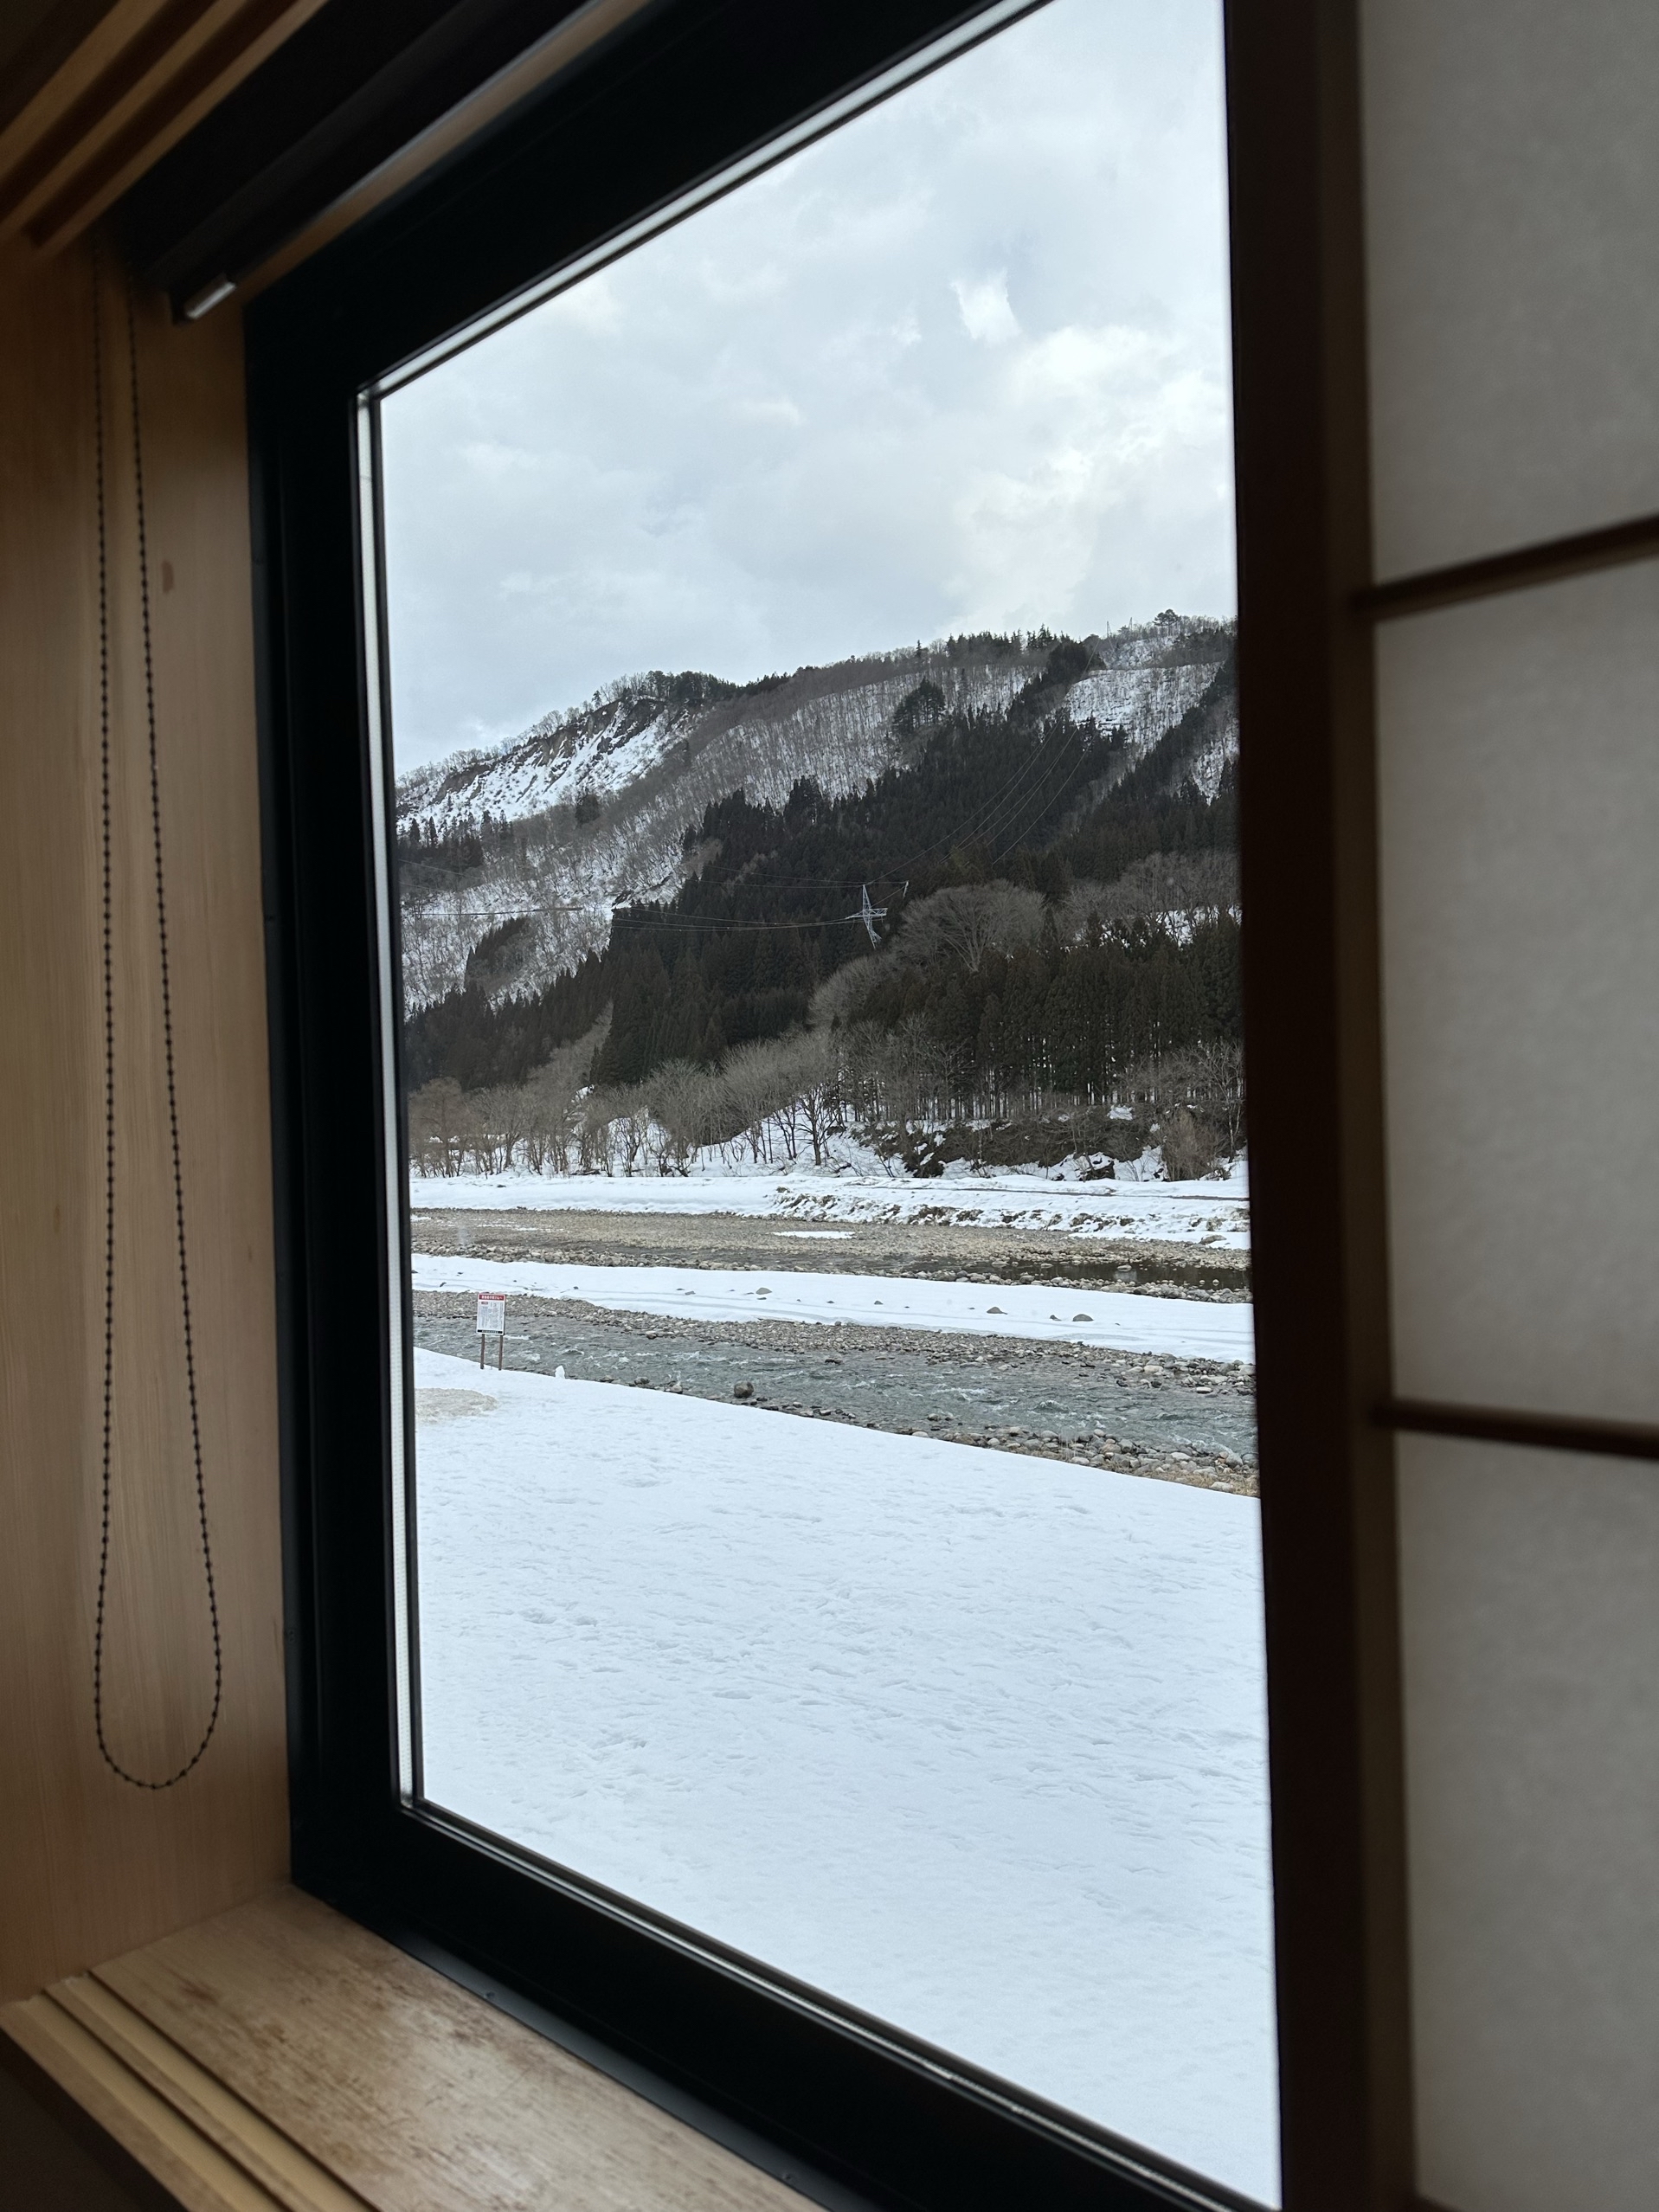 卫生：日本酒店卫生没话说，好评  环境：订的四人房，很宽敞，窗外风景也特别好，有免费的天然温泉，非常